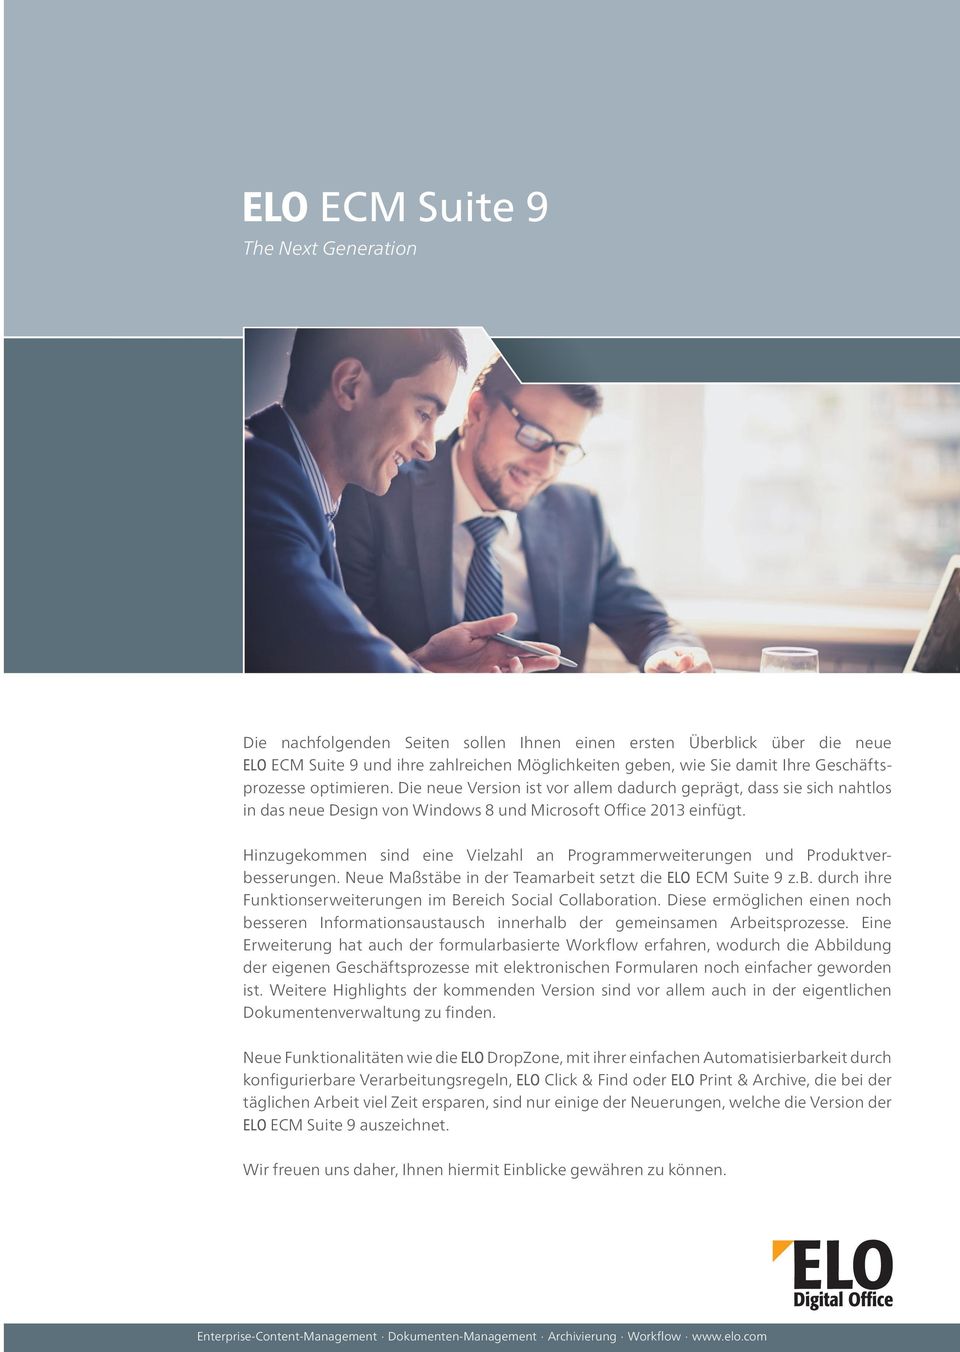 Hinzugekommen sind eine Vielzahl an Programmerweiterungen und Produktverbesserungen. Neue Maßstäbe in der Teamarbeit setzt die ELO ECM Suite 9 z.b. durch ihre Funktionserweiterungen im Bereich Social Collaboration.